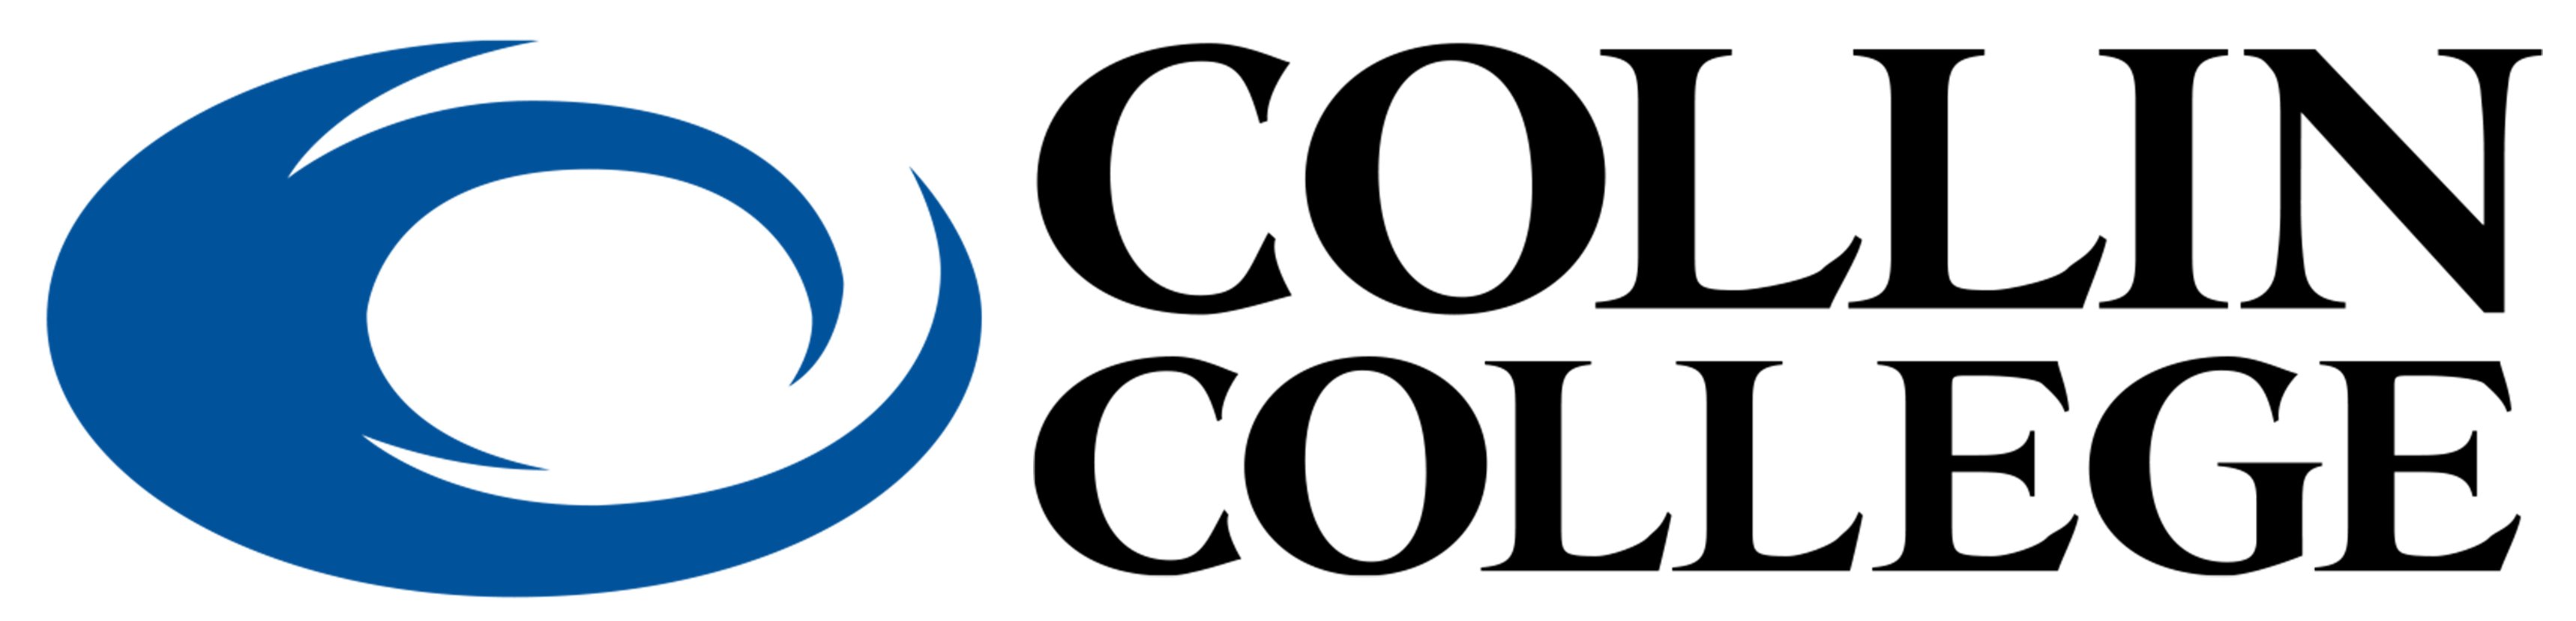 CC logo - landscape